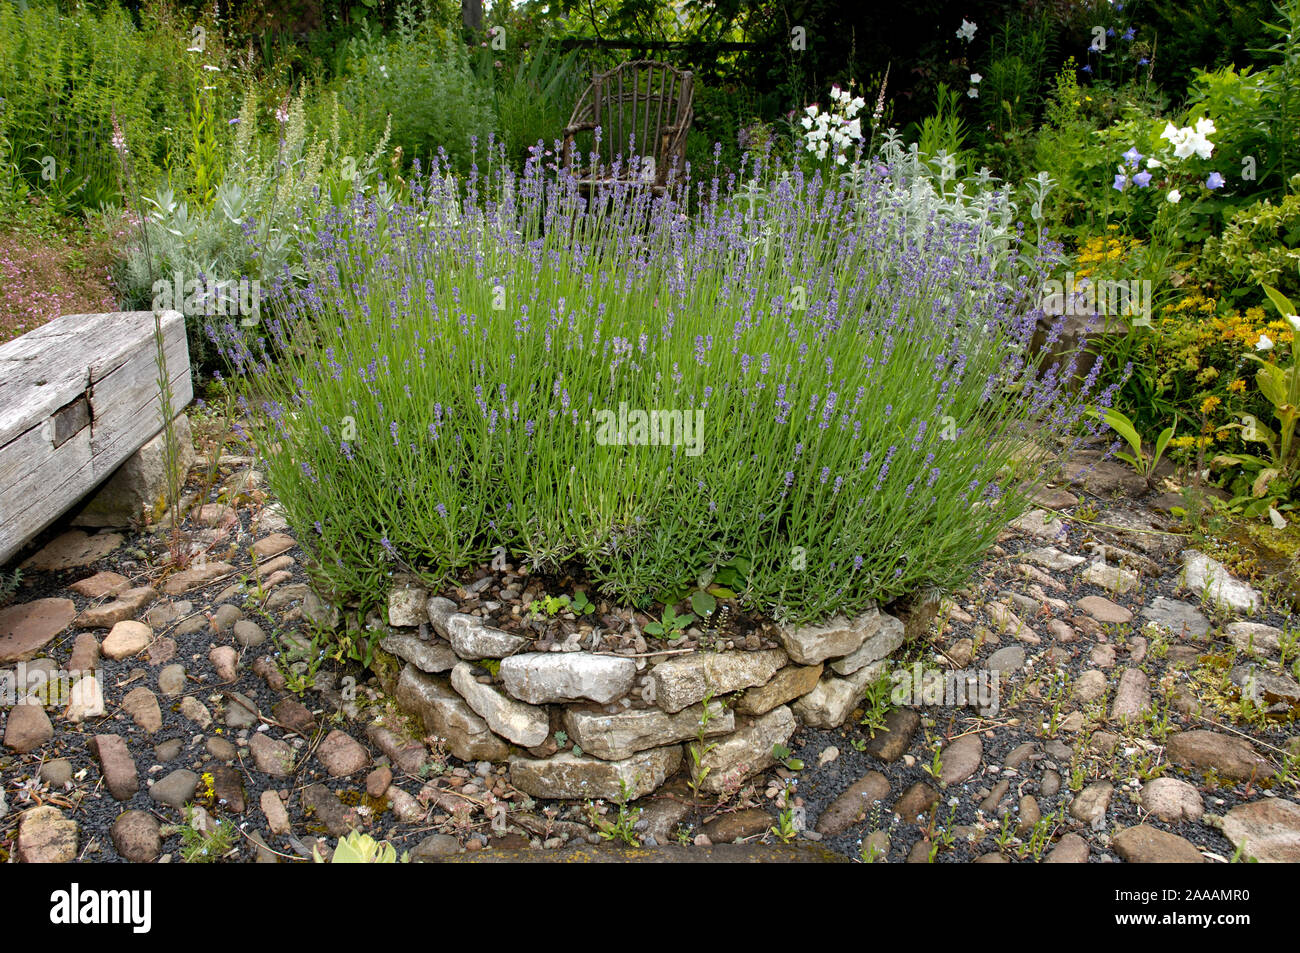 Path in herb garden with lavender / (Lavandula angustifolia) | Gartenweg in Kraeutergarten mit Lavendel / (Lavandula angustifolia) Stock Photo